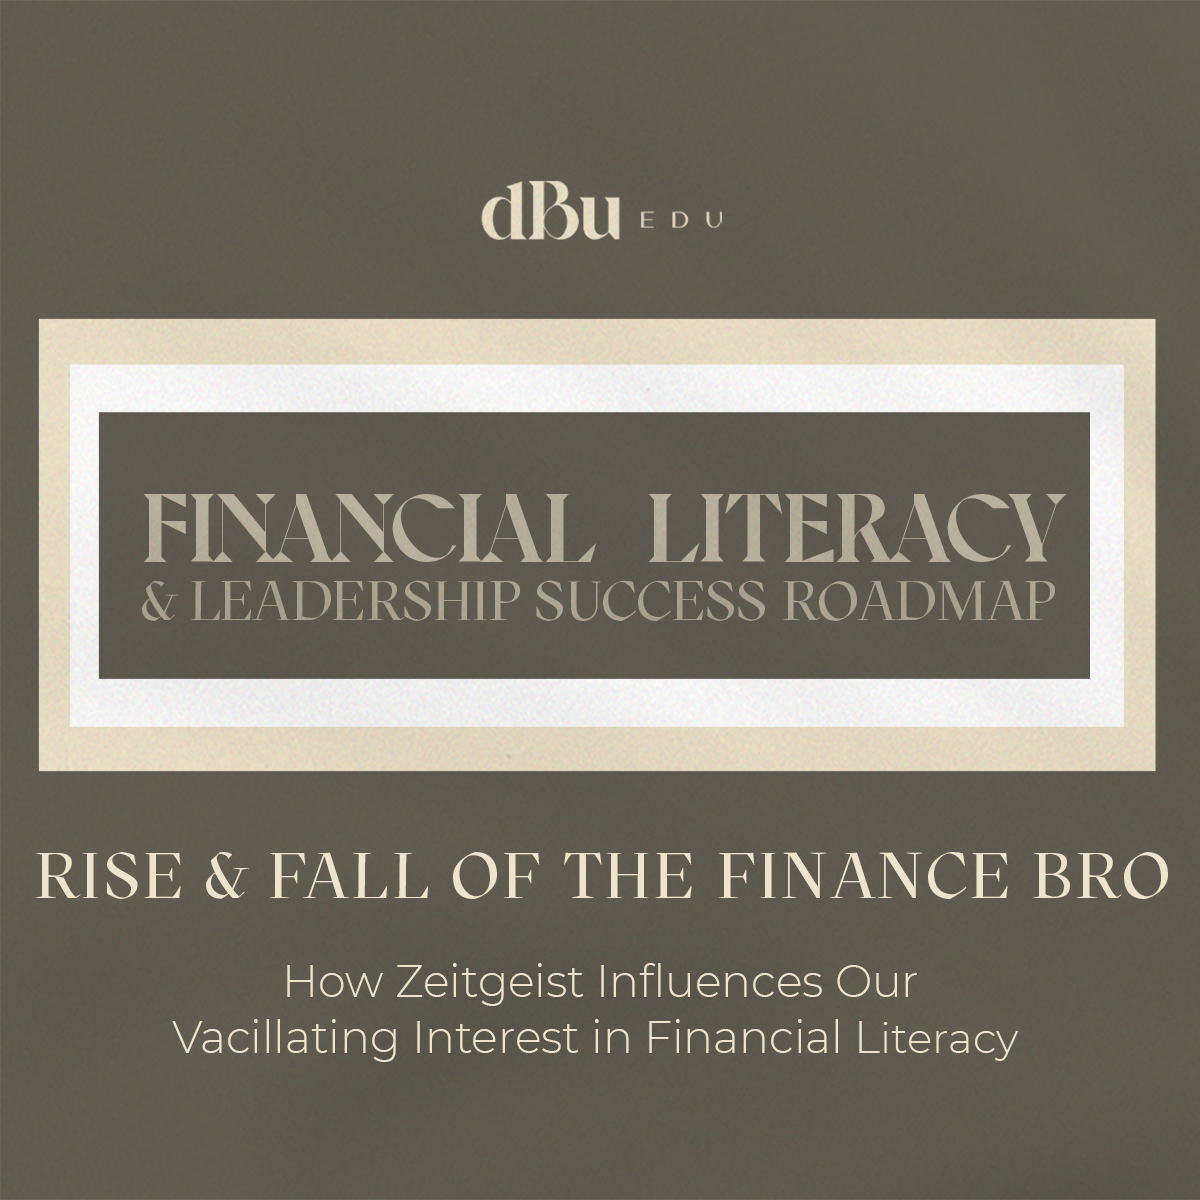 DBU EDU Financial Literacy